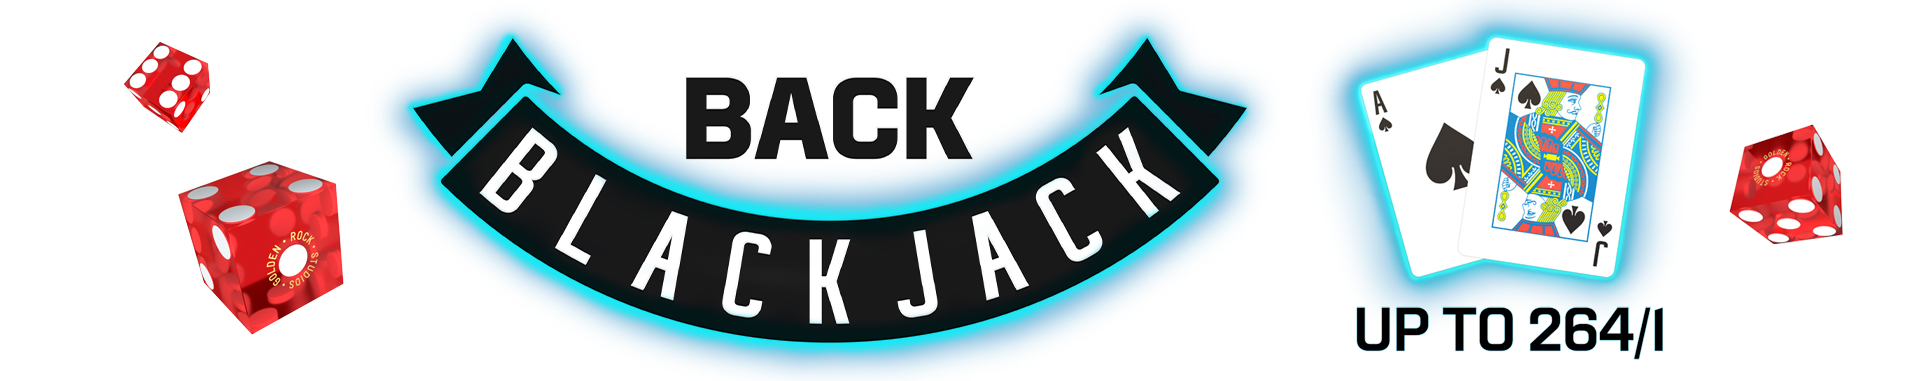 Back BlackJack